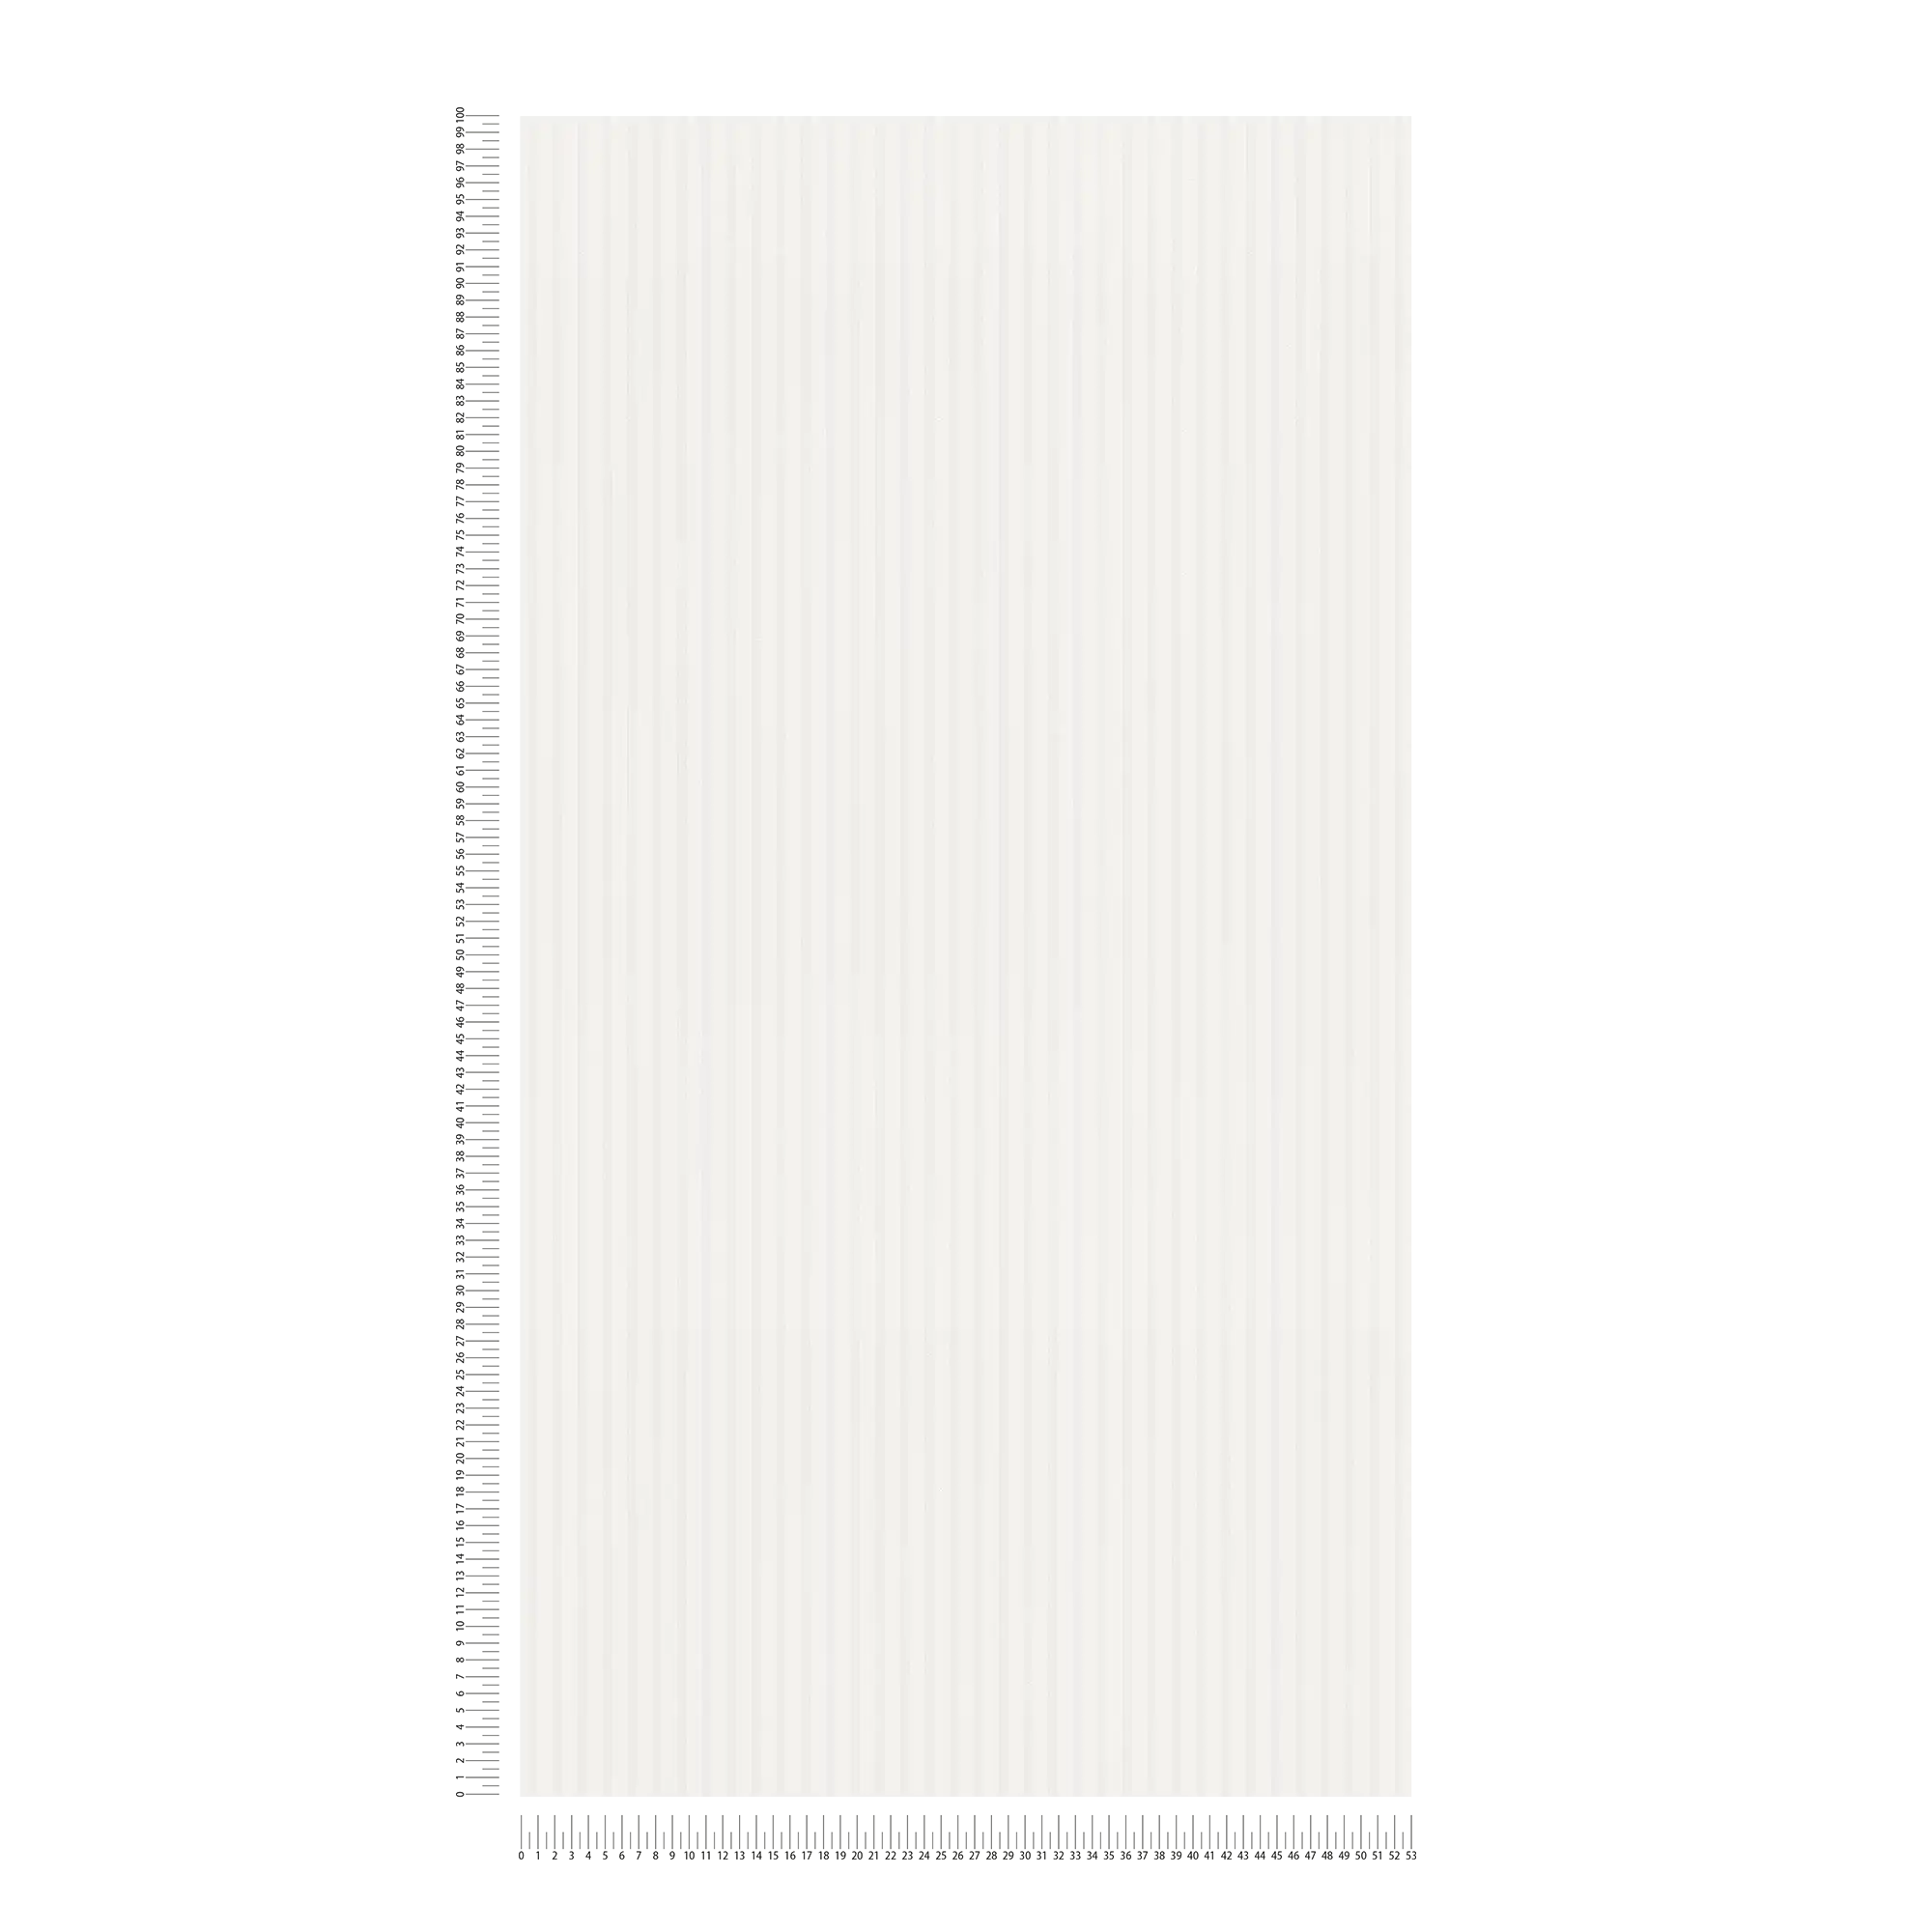             Carta da parati a righe strette in bianco chiaro - bianco, beige
        